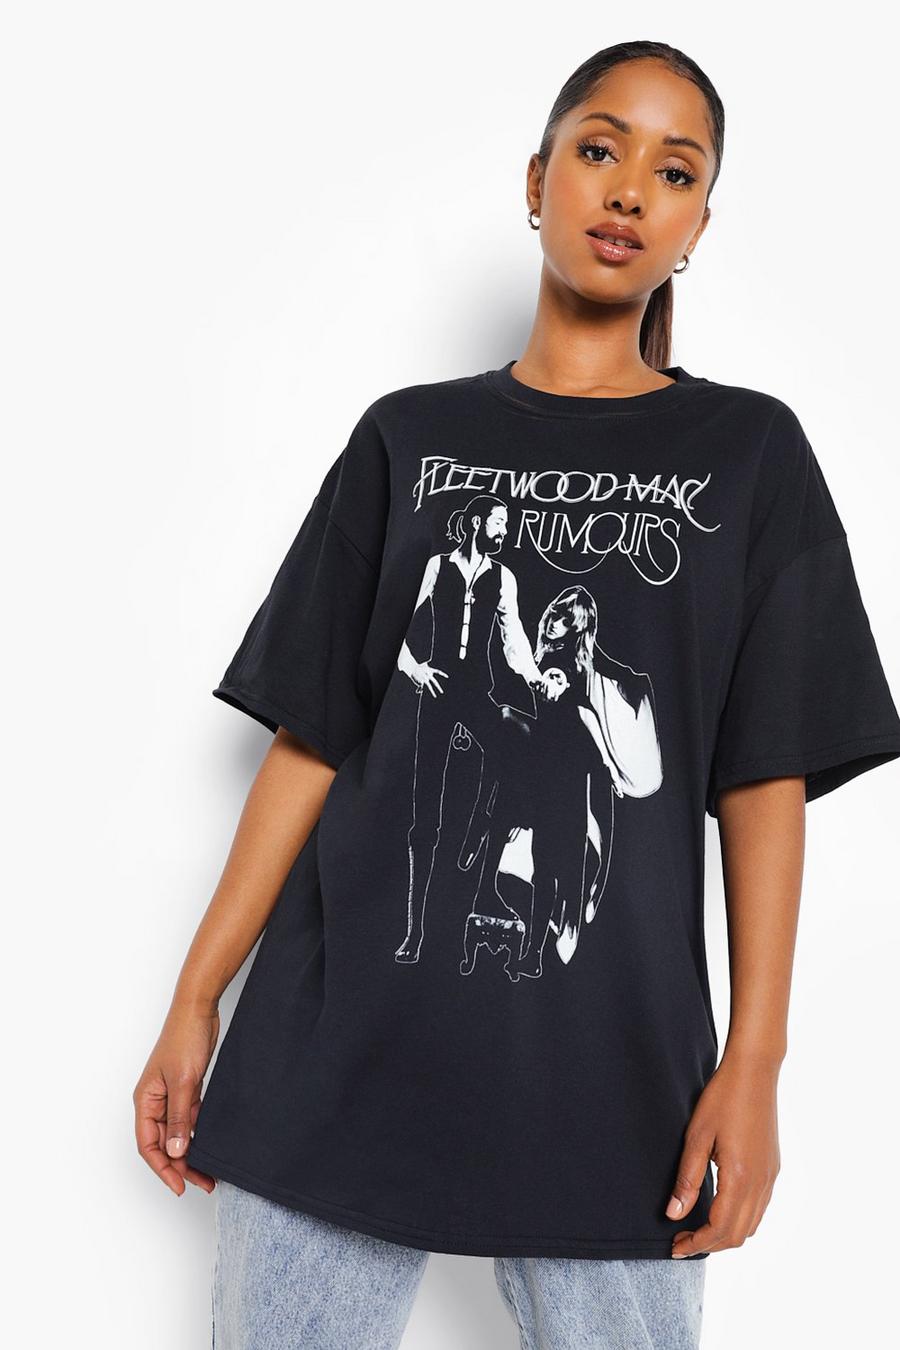 Camiseta Premamá con estampado de Fleetwood Mac, Black negro